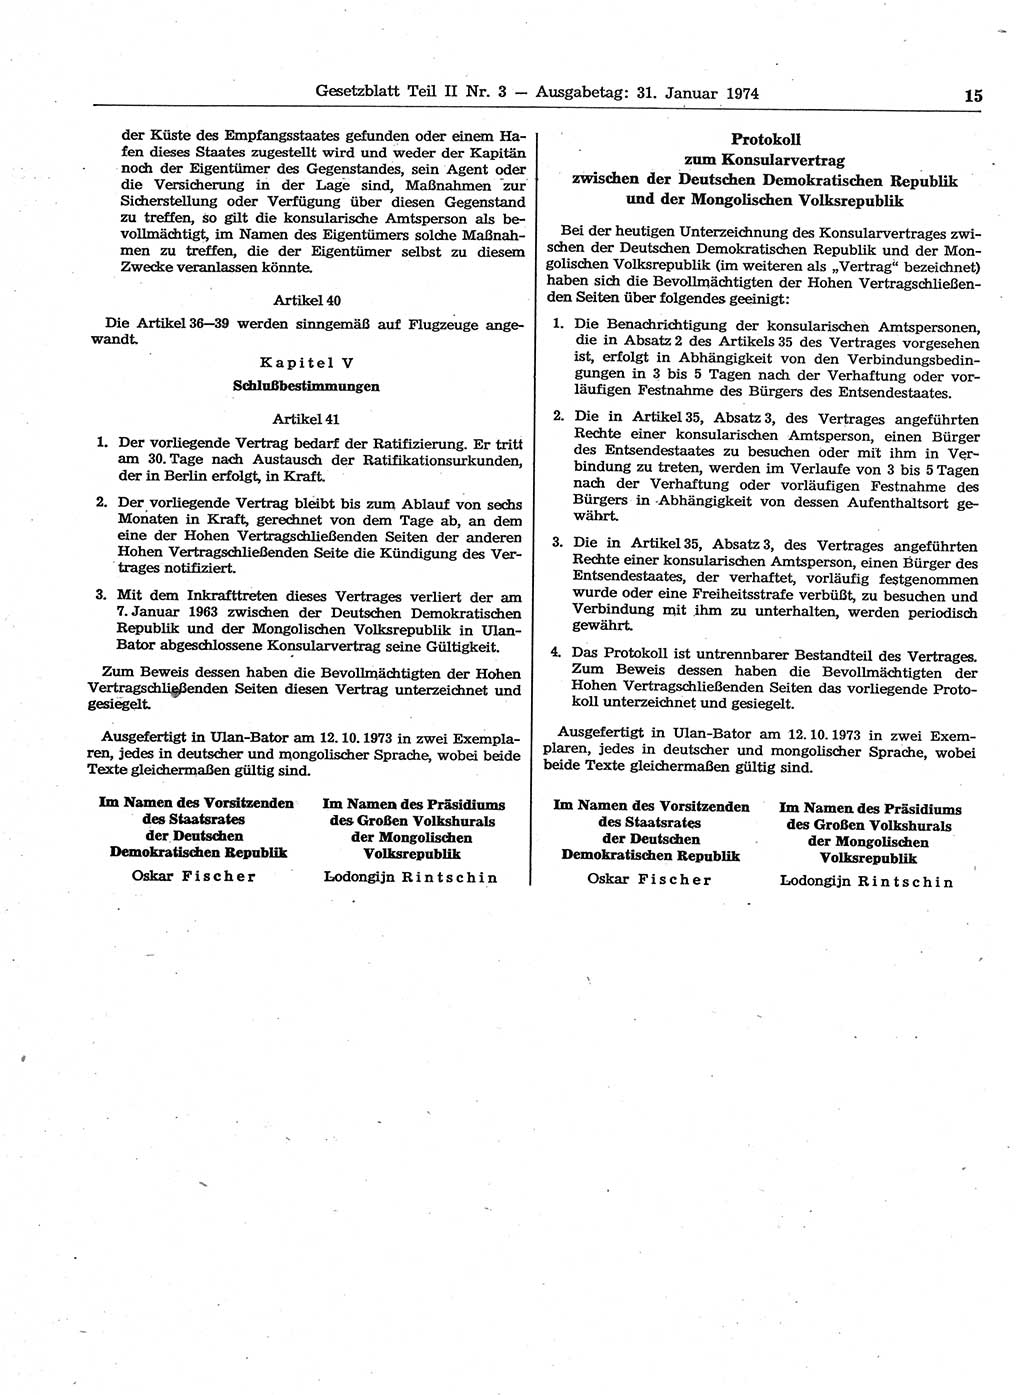 Gesetzblatt (GBl.) der Deutschen Demokratischen Republik (DDR) Teil ⅠⅠ 1974, Seite 15 (GBl. DDR ⅠⅠ 1974, S. 15)